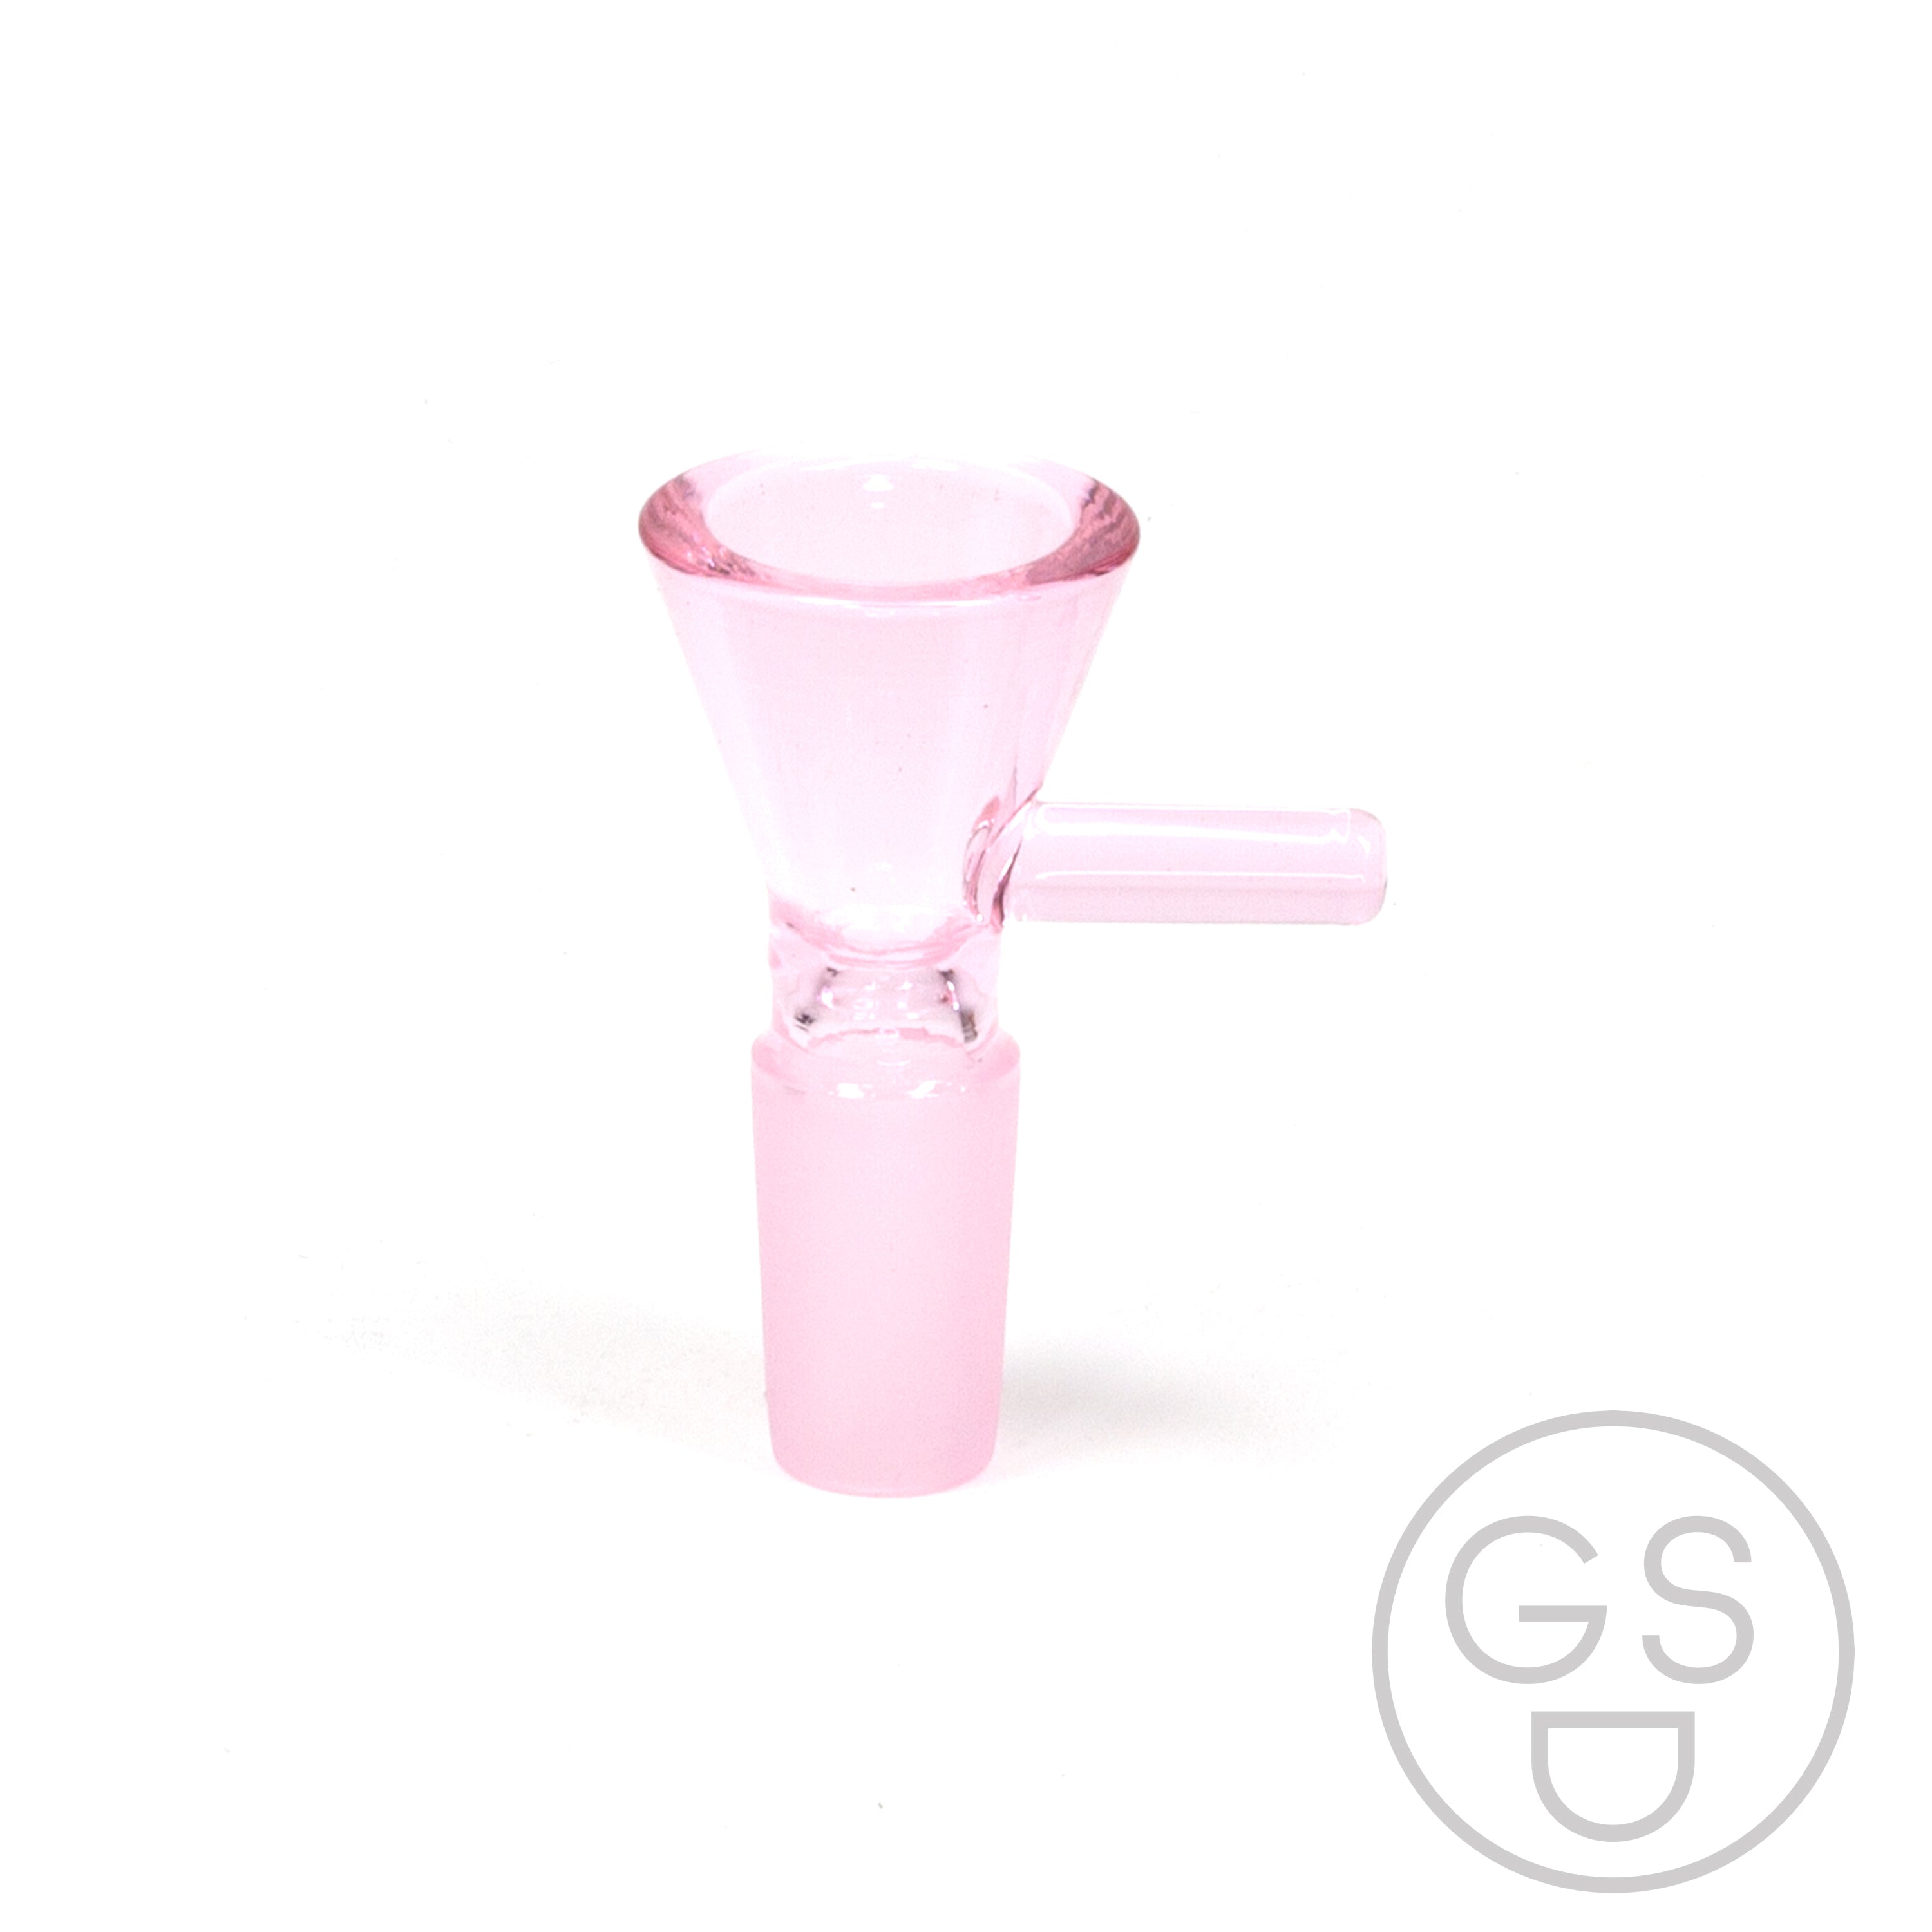 Prism Modular Waterpipe Bowl - Transparent / Pink Lemonade